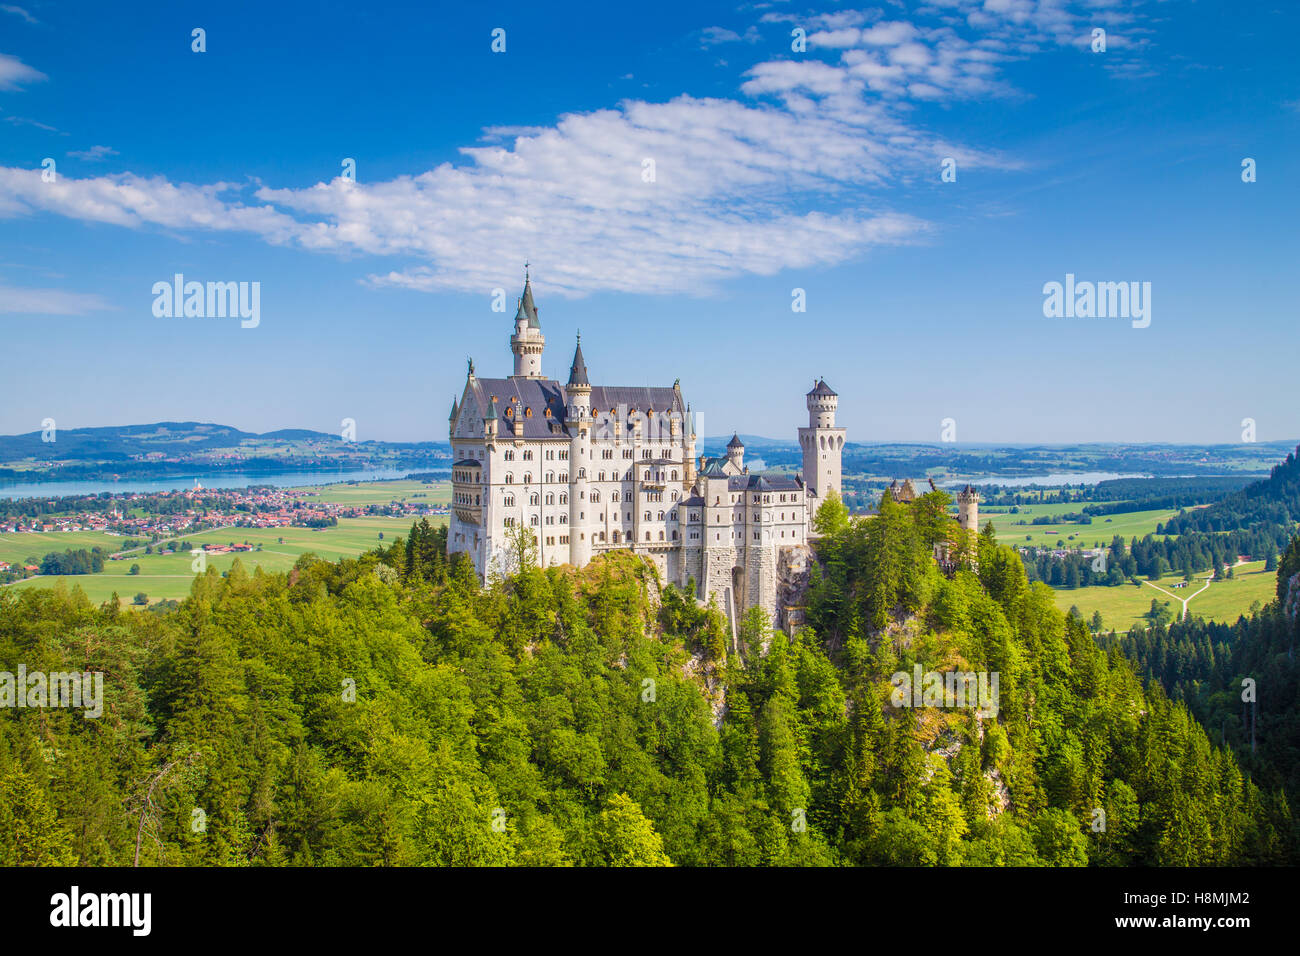 Visualizzazione classica del famoso castello di Neuschwanstein, uno d'Europa più visitato castelli, in una bella giornata di sole in estate, Baviera, Germania Foto Stock